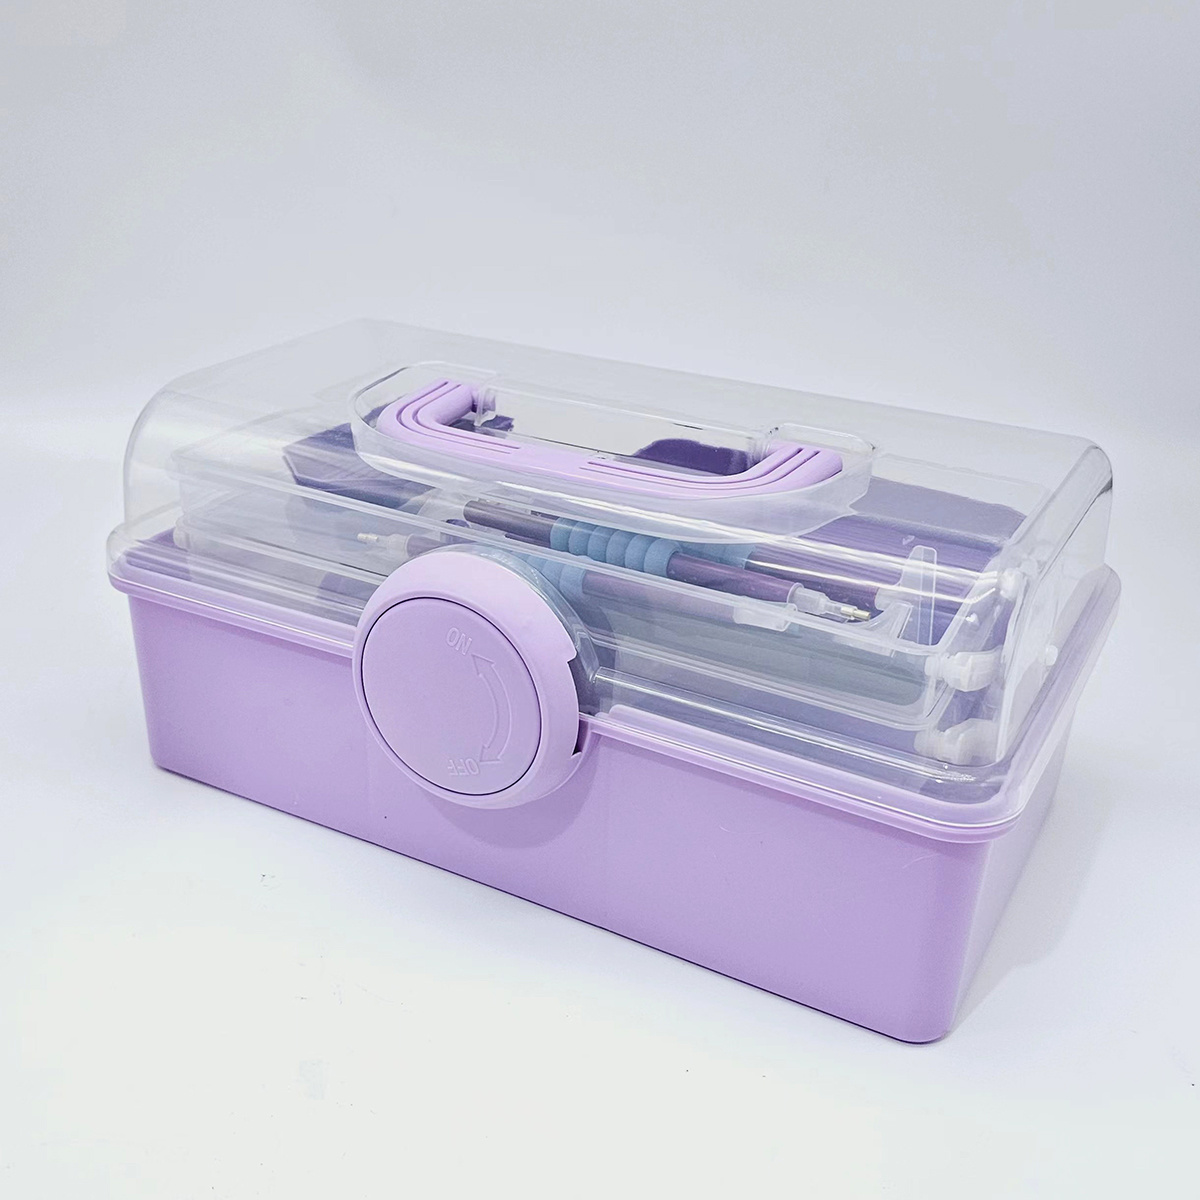 57 Purple Diamond Painting Tool Set With Storage Box, DIY Diamond